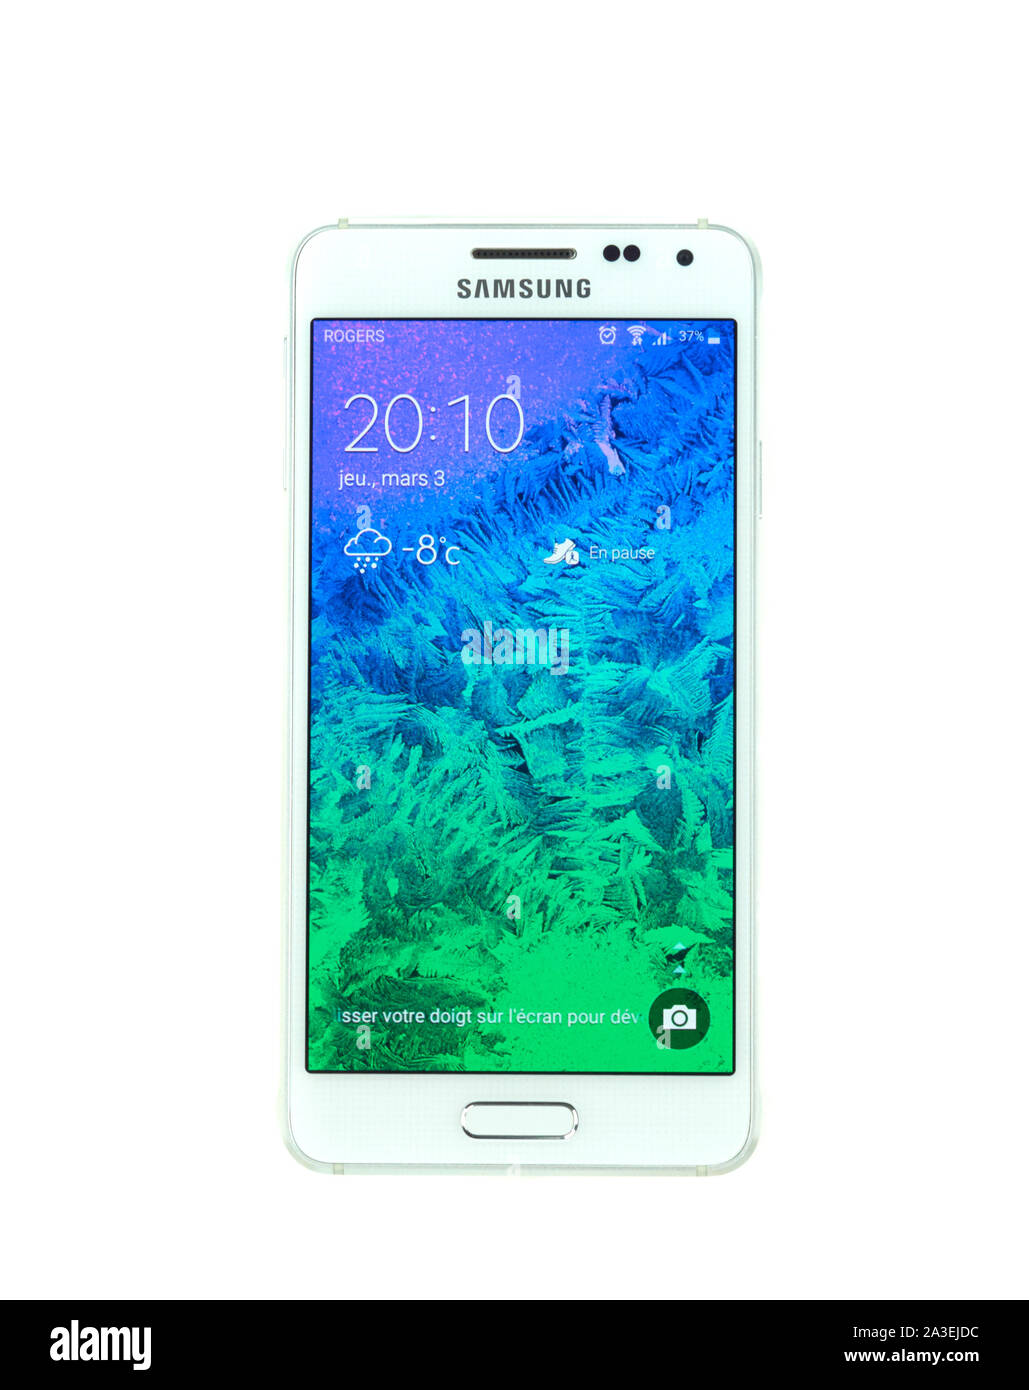 MONTREAL, Canada - 3 Marzo 2016 - Samsung Galaxy smartphone alfa. Uno dei popolari telefoni cellulari. Foto Stock